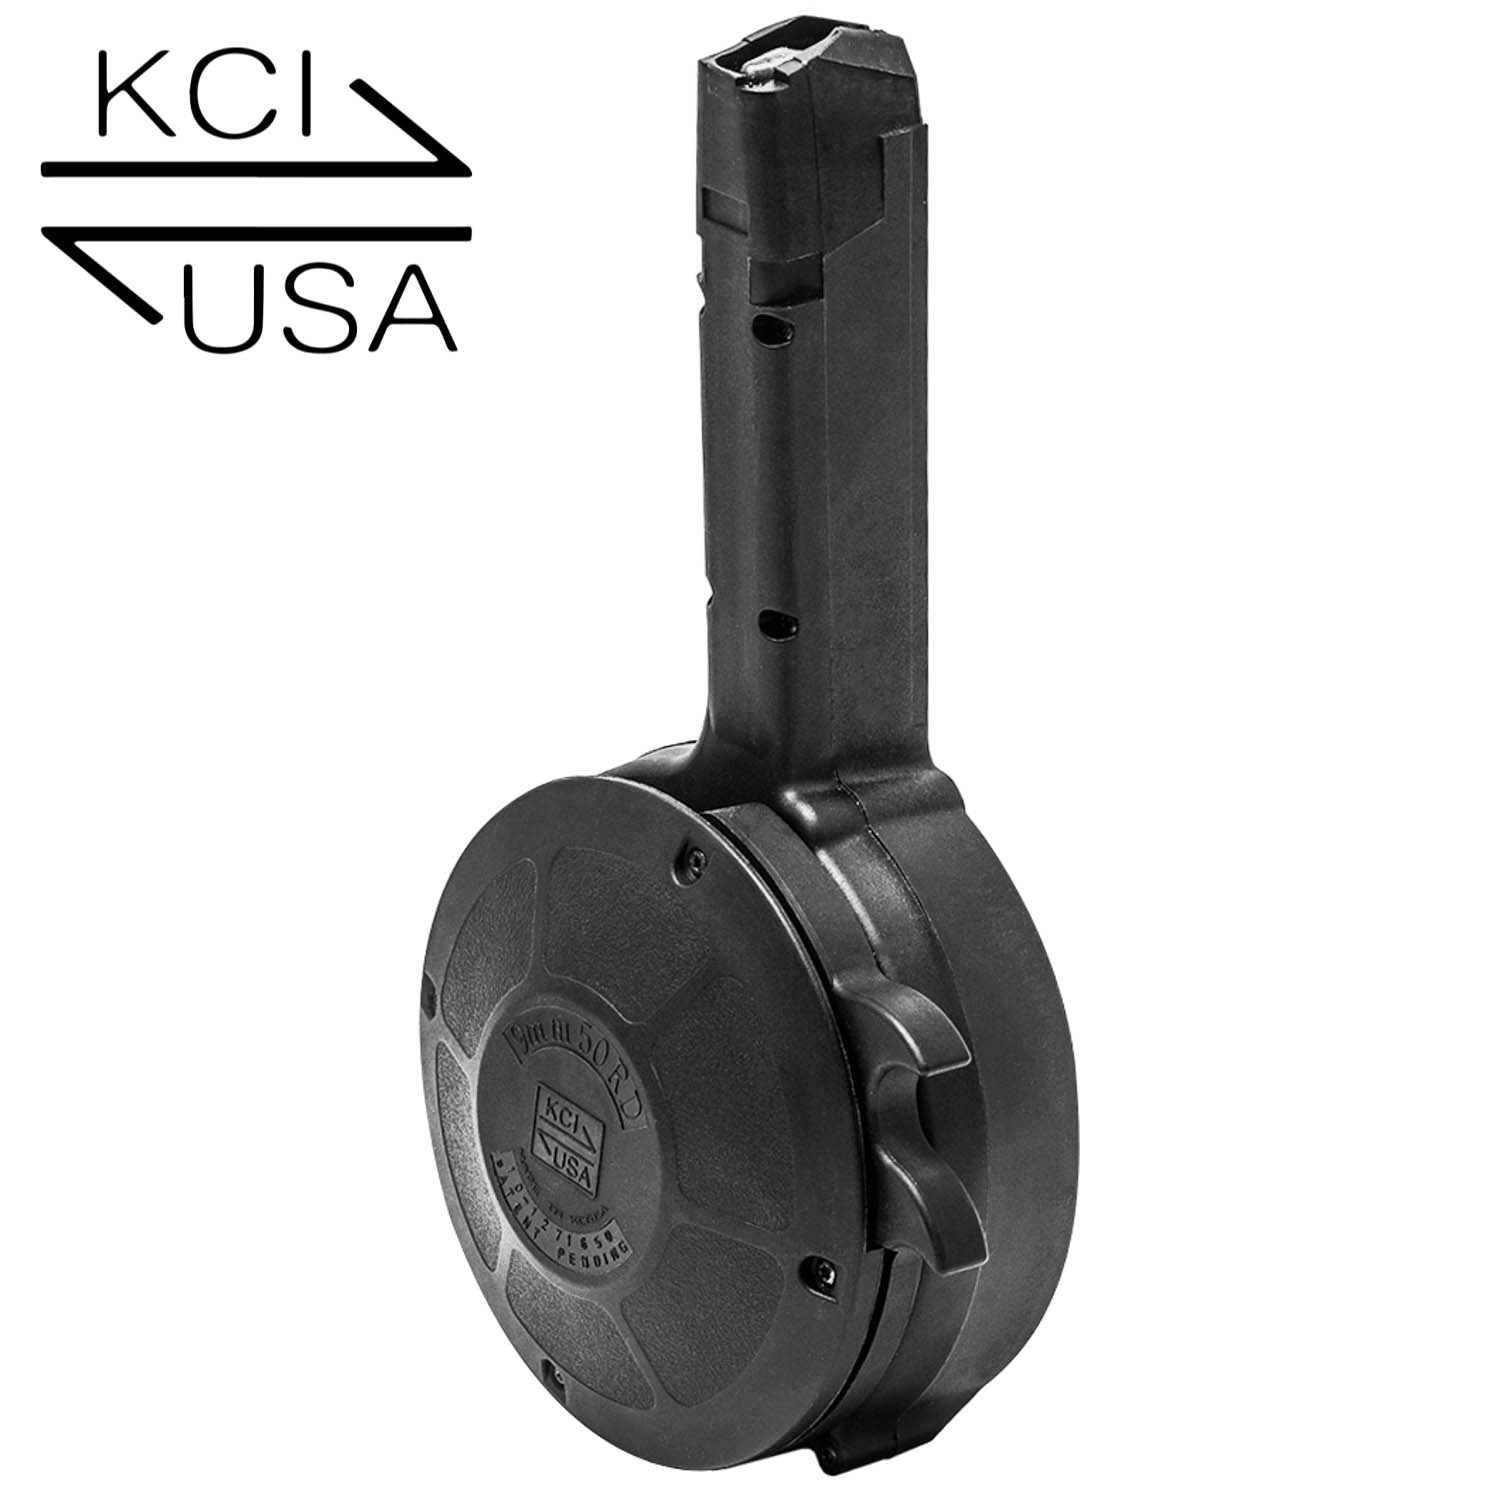 Zásobník KCI, velkokapacitní - bubnový, Glock, 9 mm, 50 ran